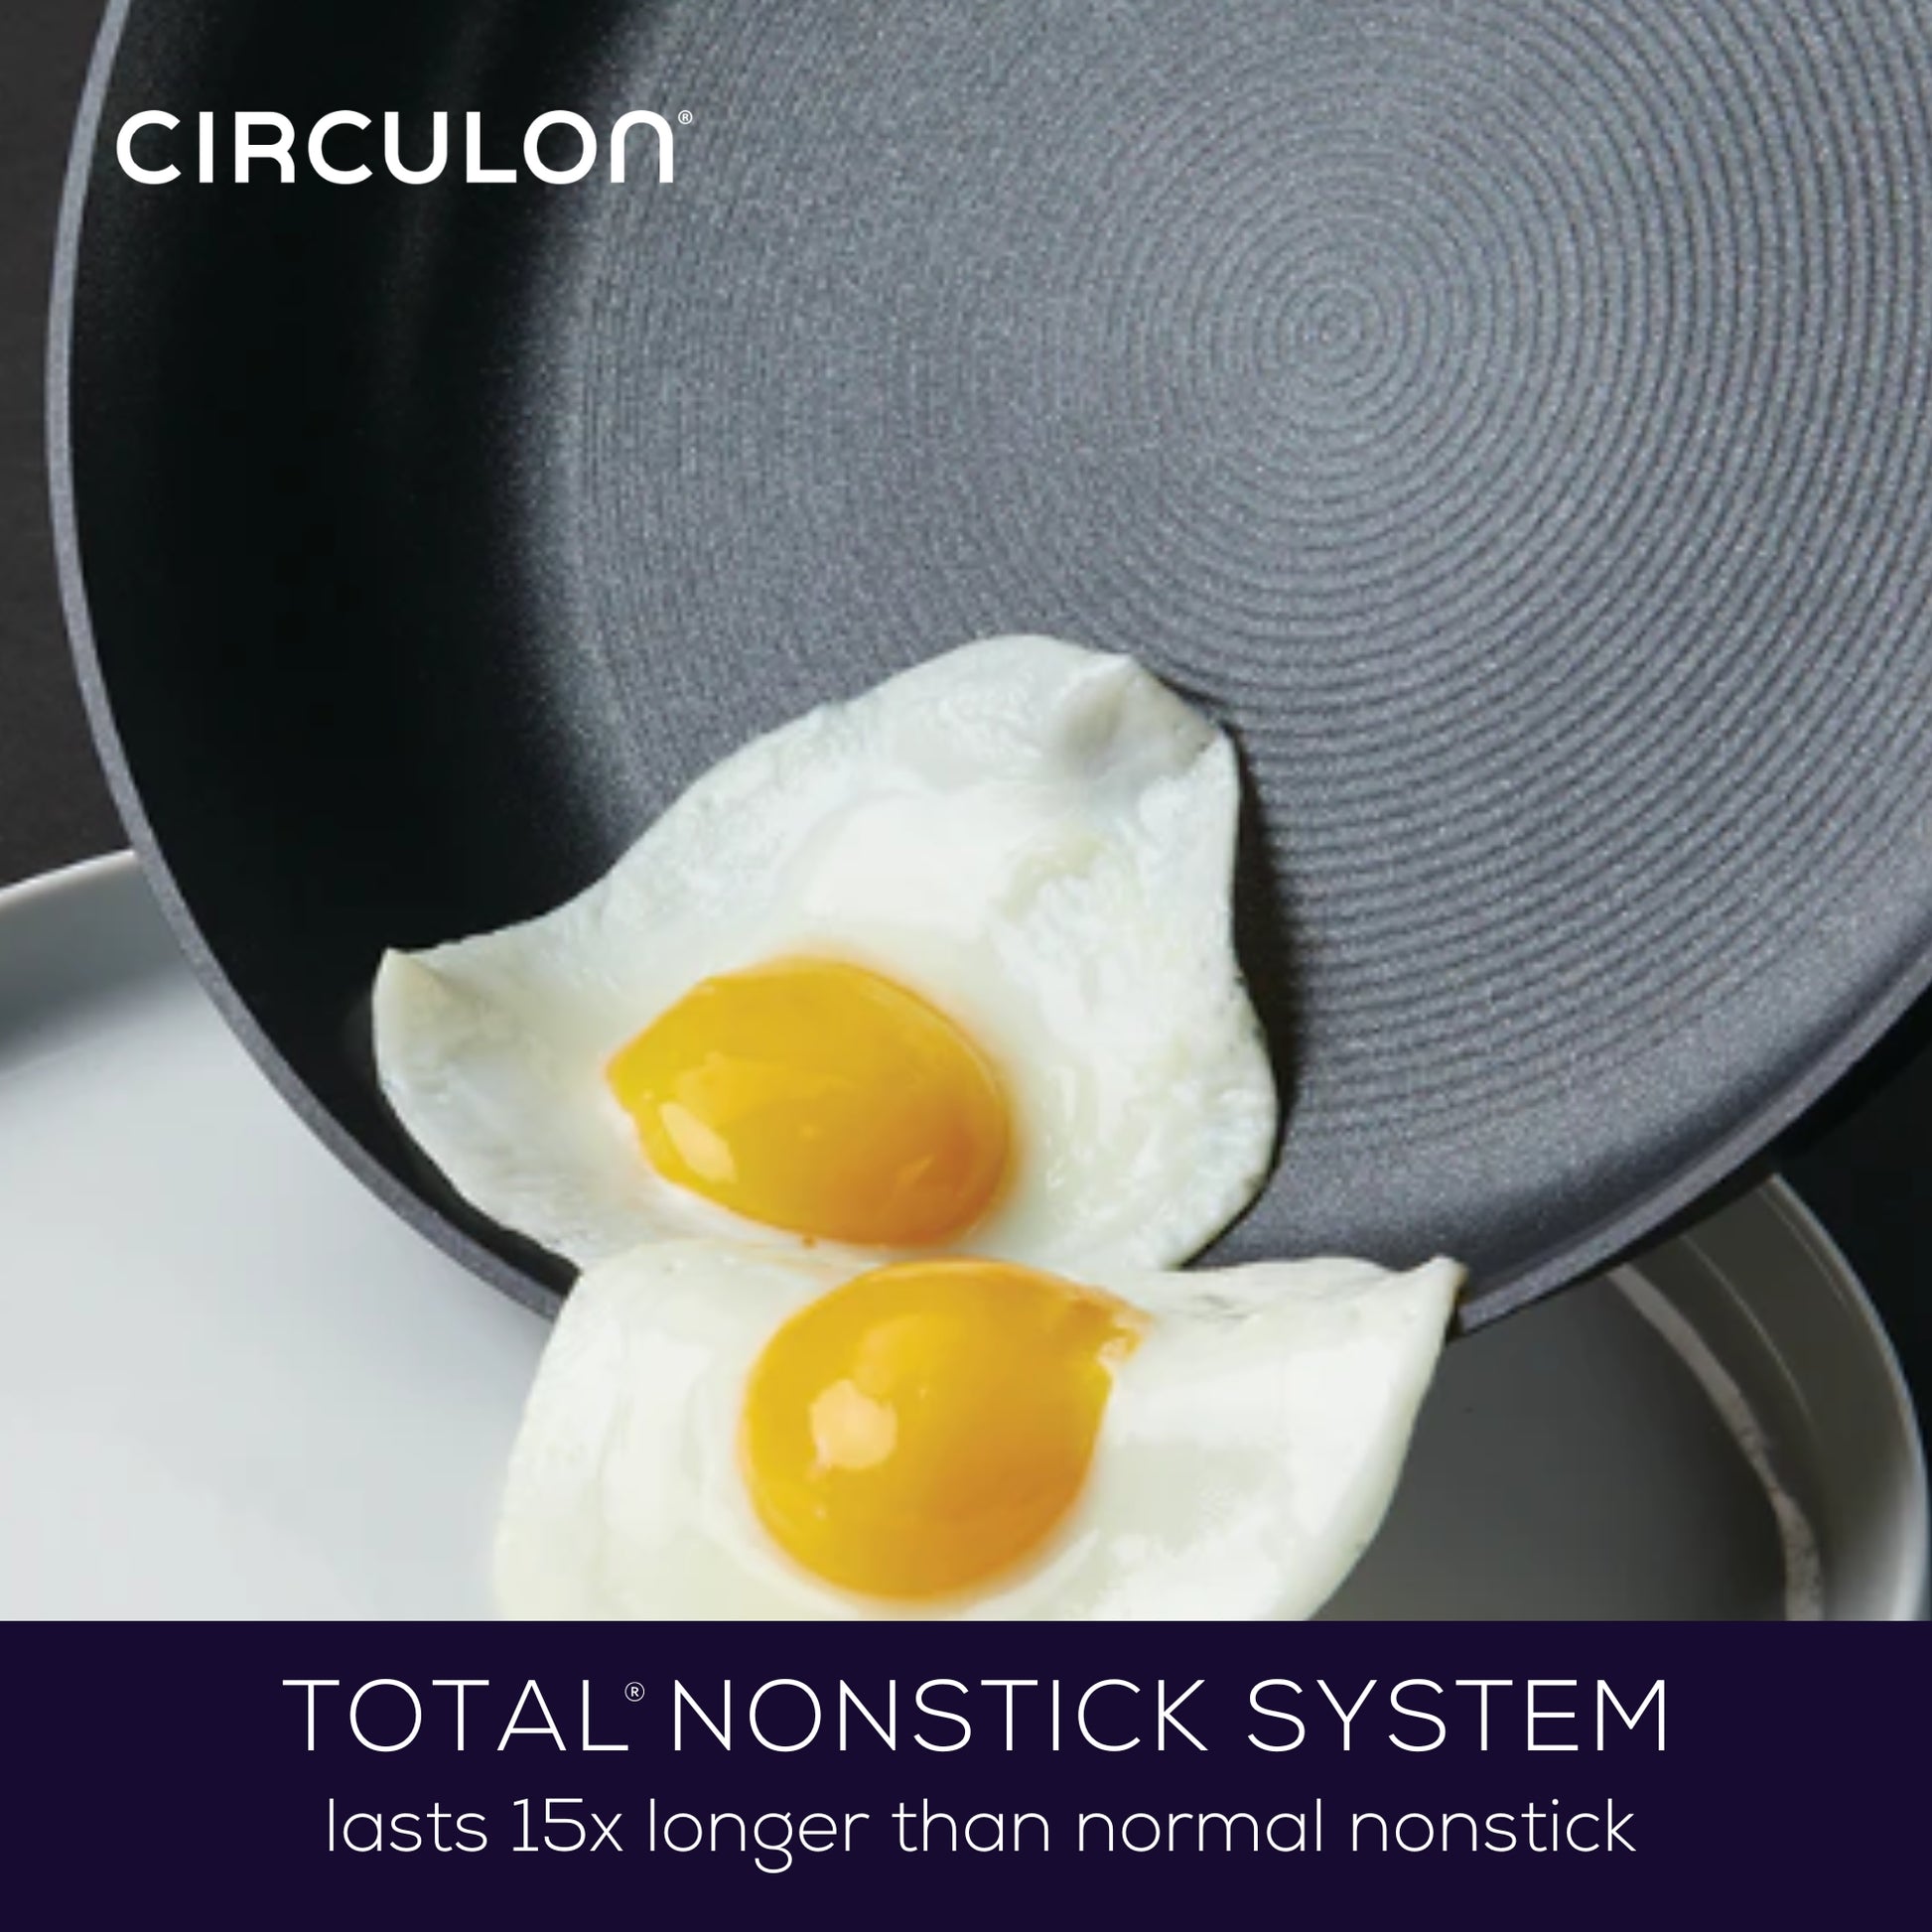 Circulon Excellence 26cm Frying Pan